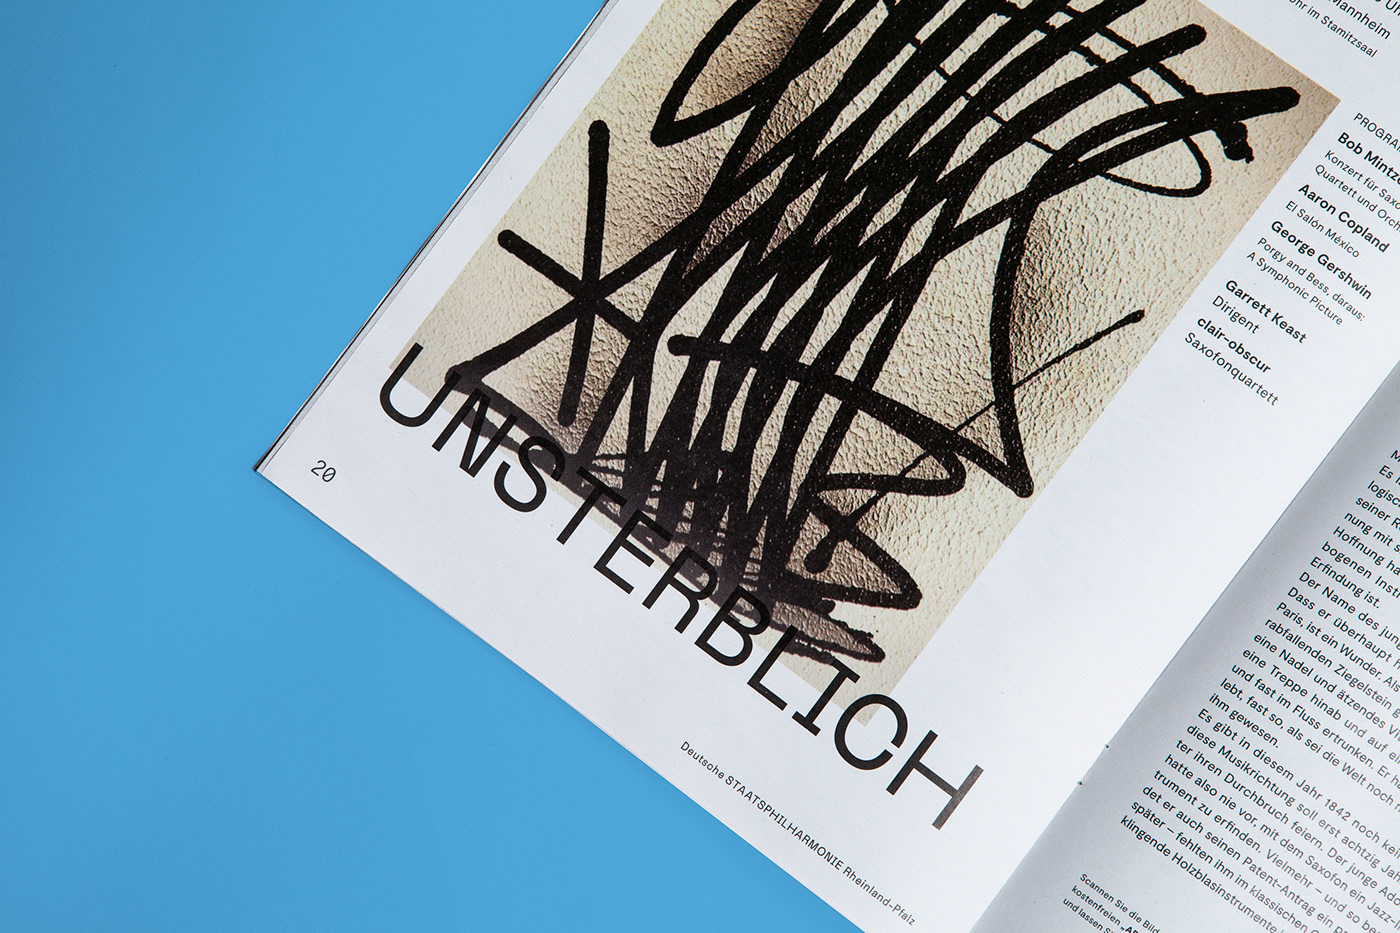 KontextKommunikation Grafikdesign ILLUSTRATION  typografie editorialdesign ludwigshafen orchester konzert